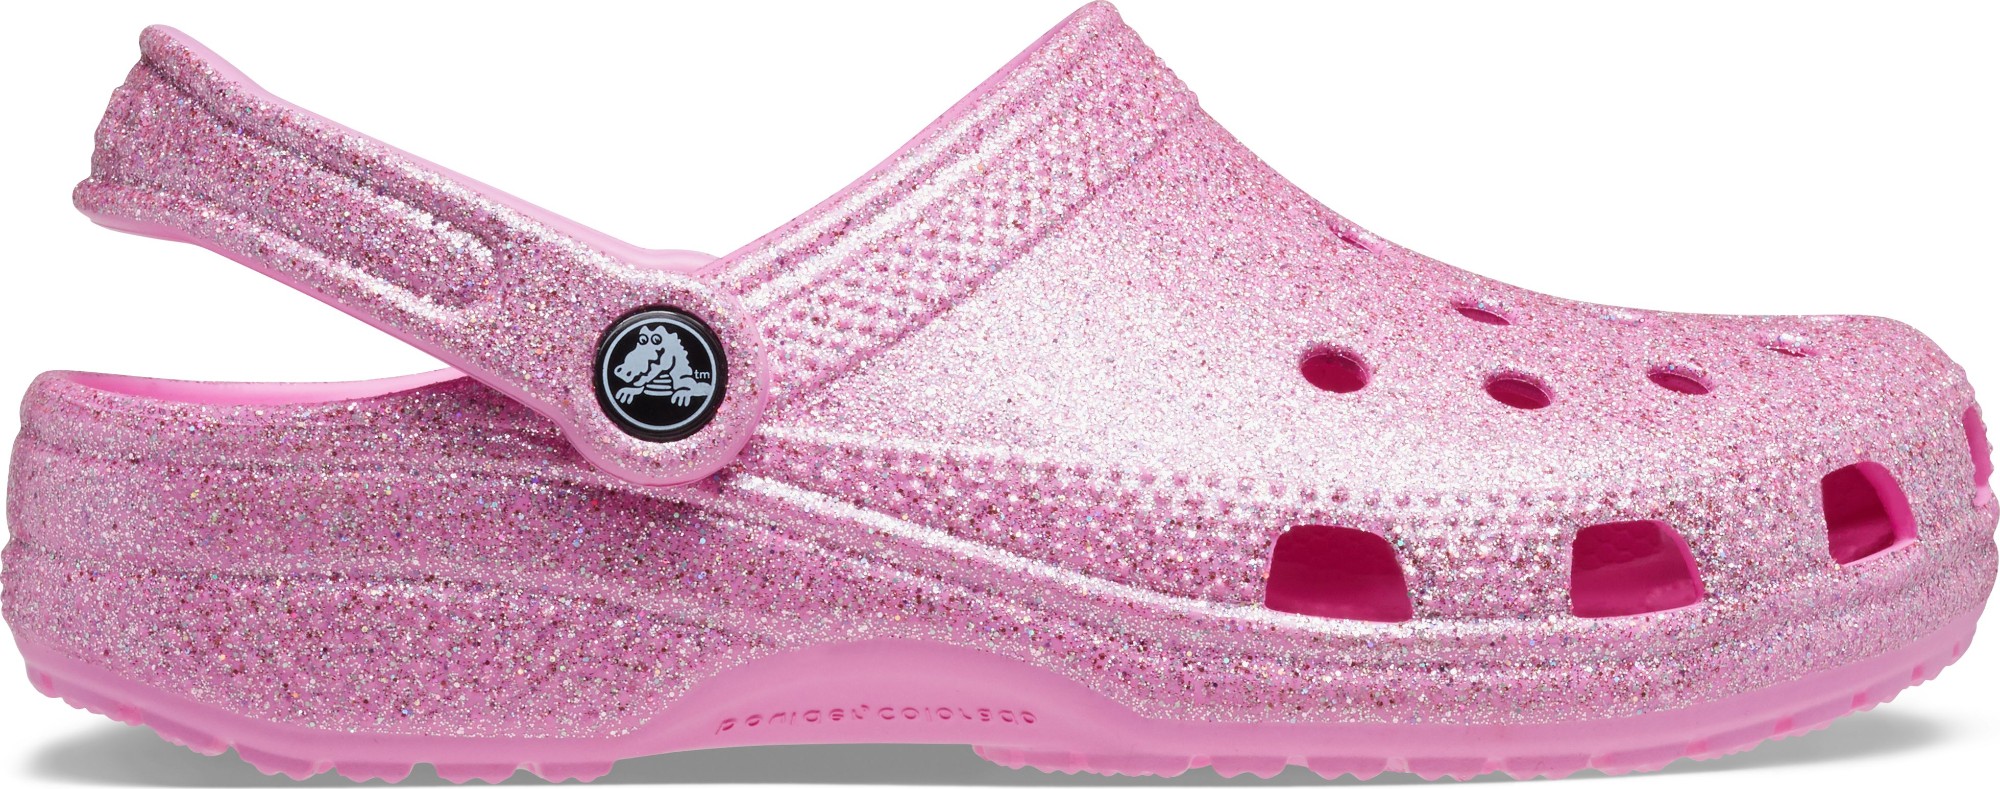 Crocs Classic Glitter II Taffy Clog Women's Clogs | eBay